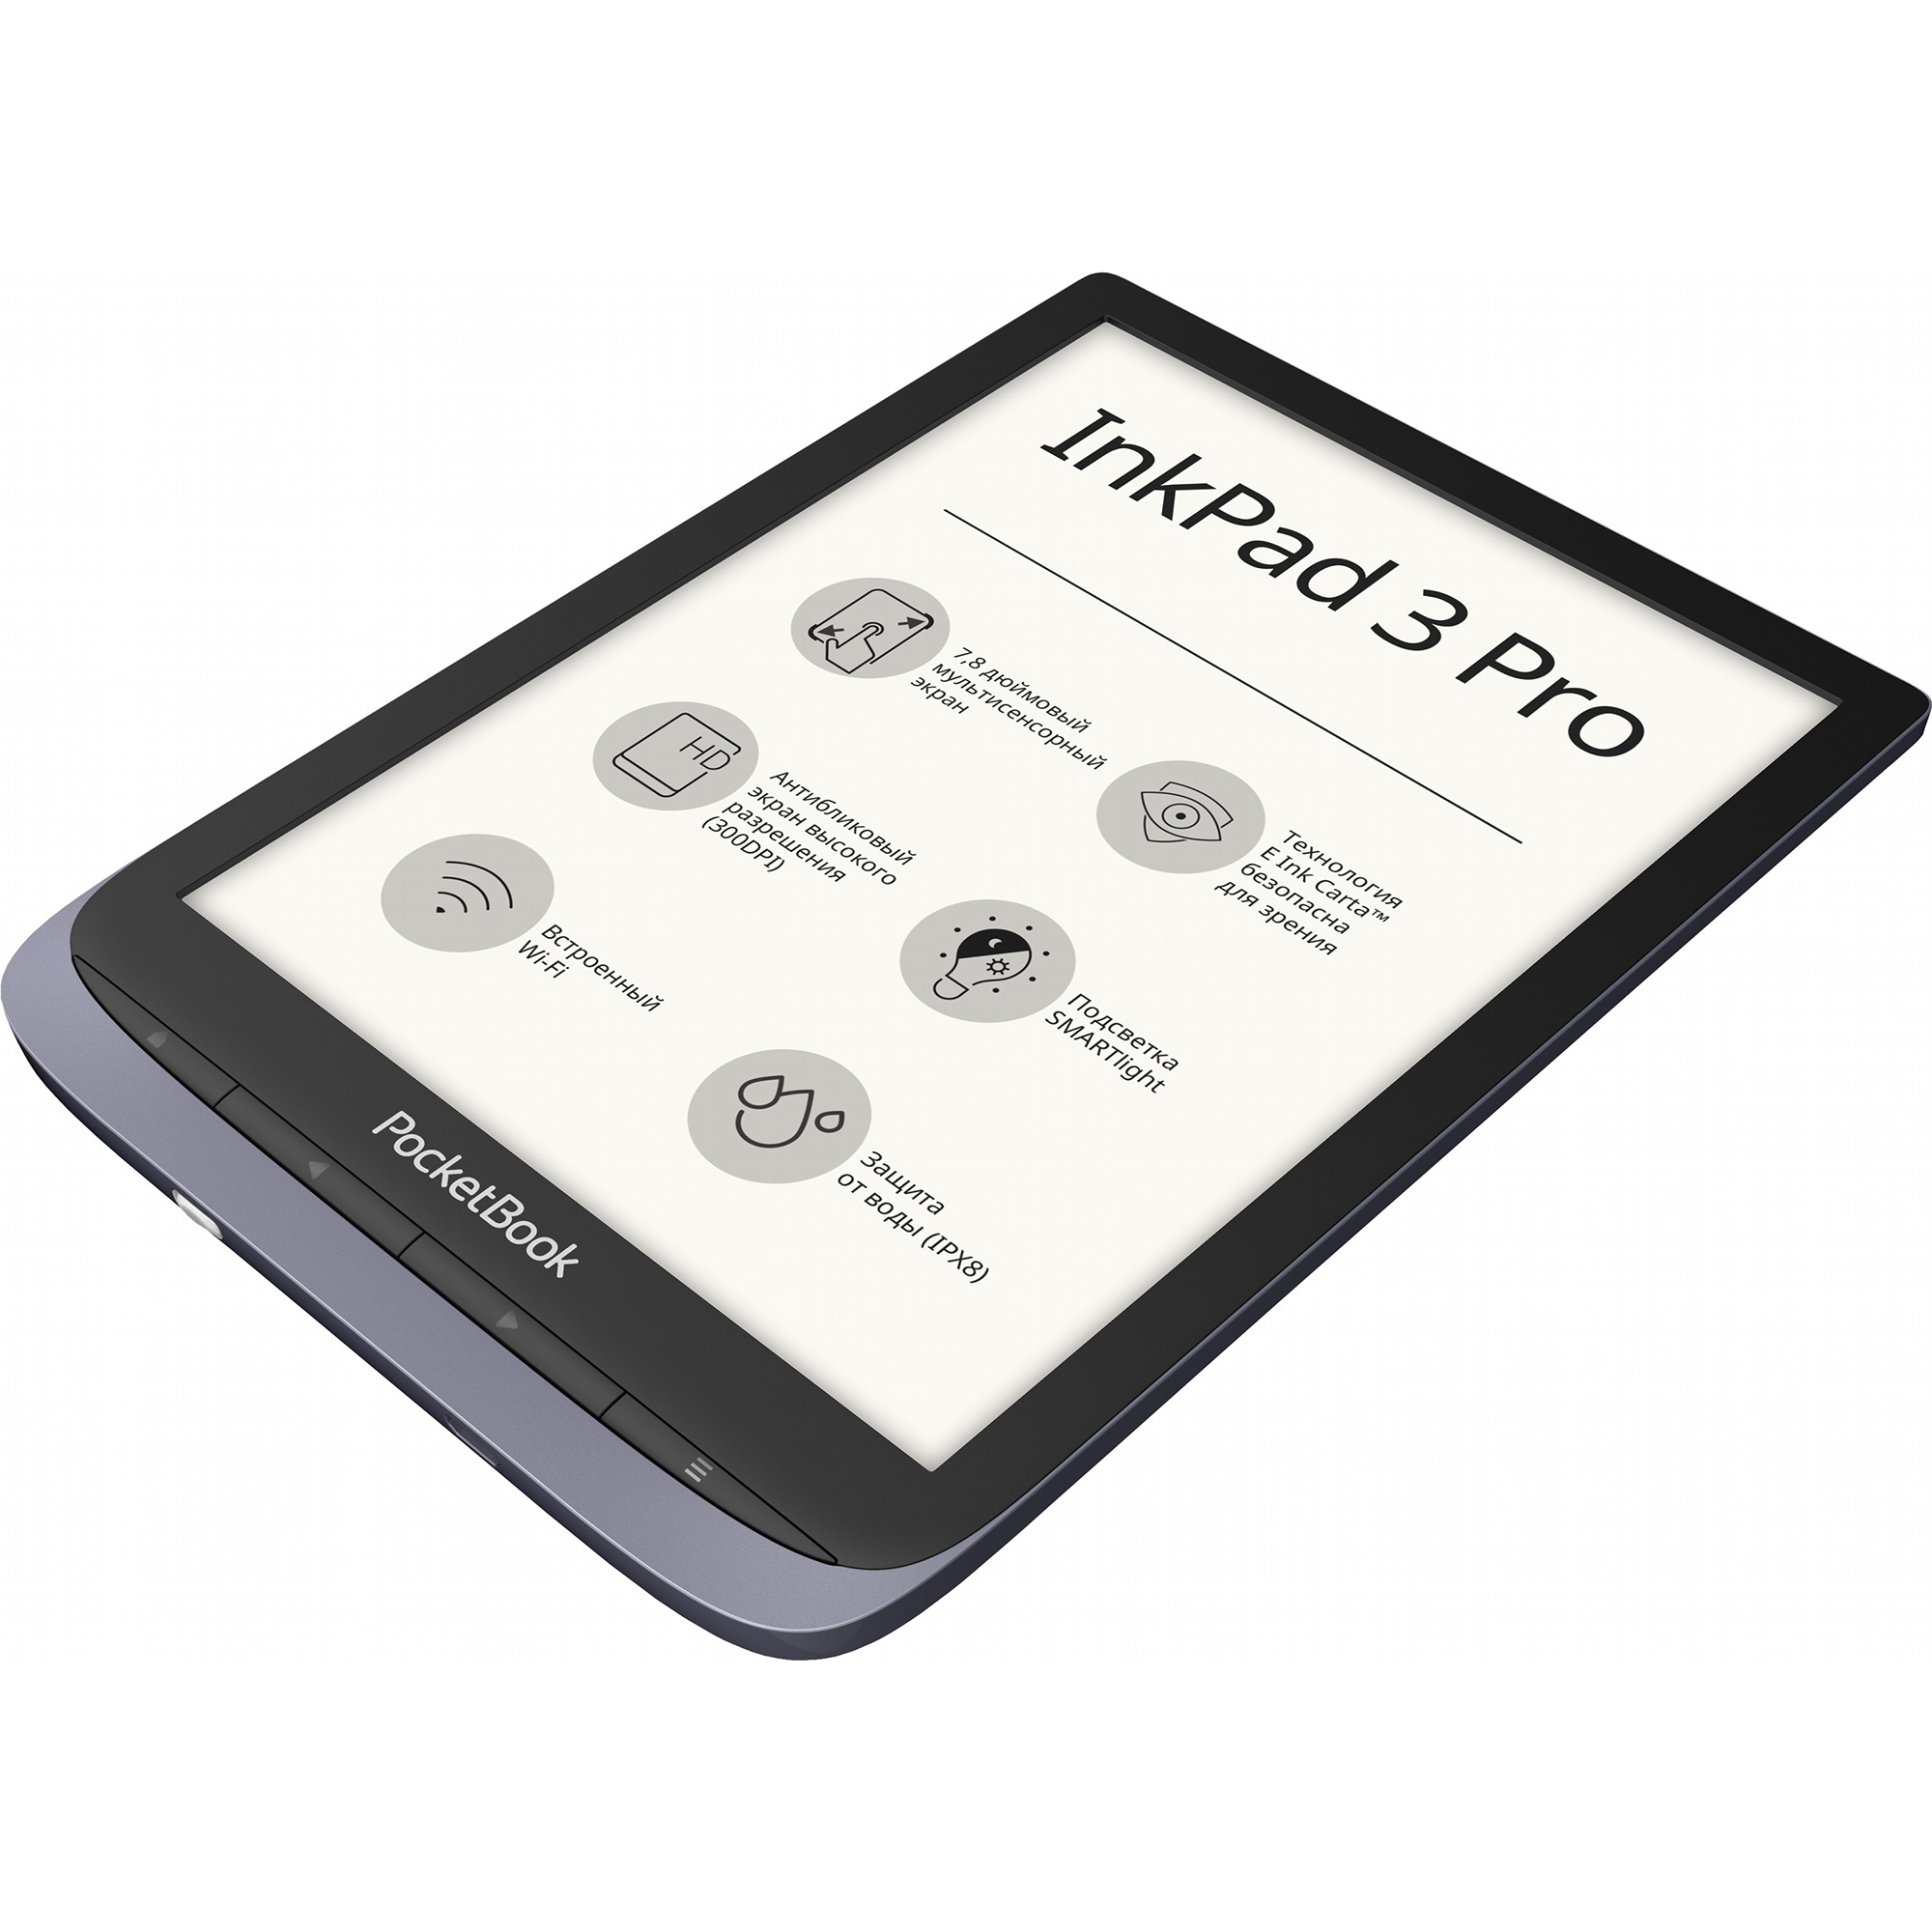 Pocketbook inkpad 3 pro. POCKETBOOK 740 Pro / Inkpad 3 Pro. POCKETBOOK 632 Touch HD 3. POCKETBOOK 632 Plus Grey.